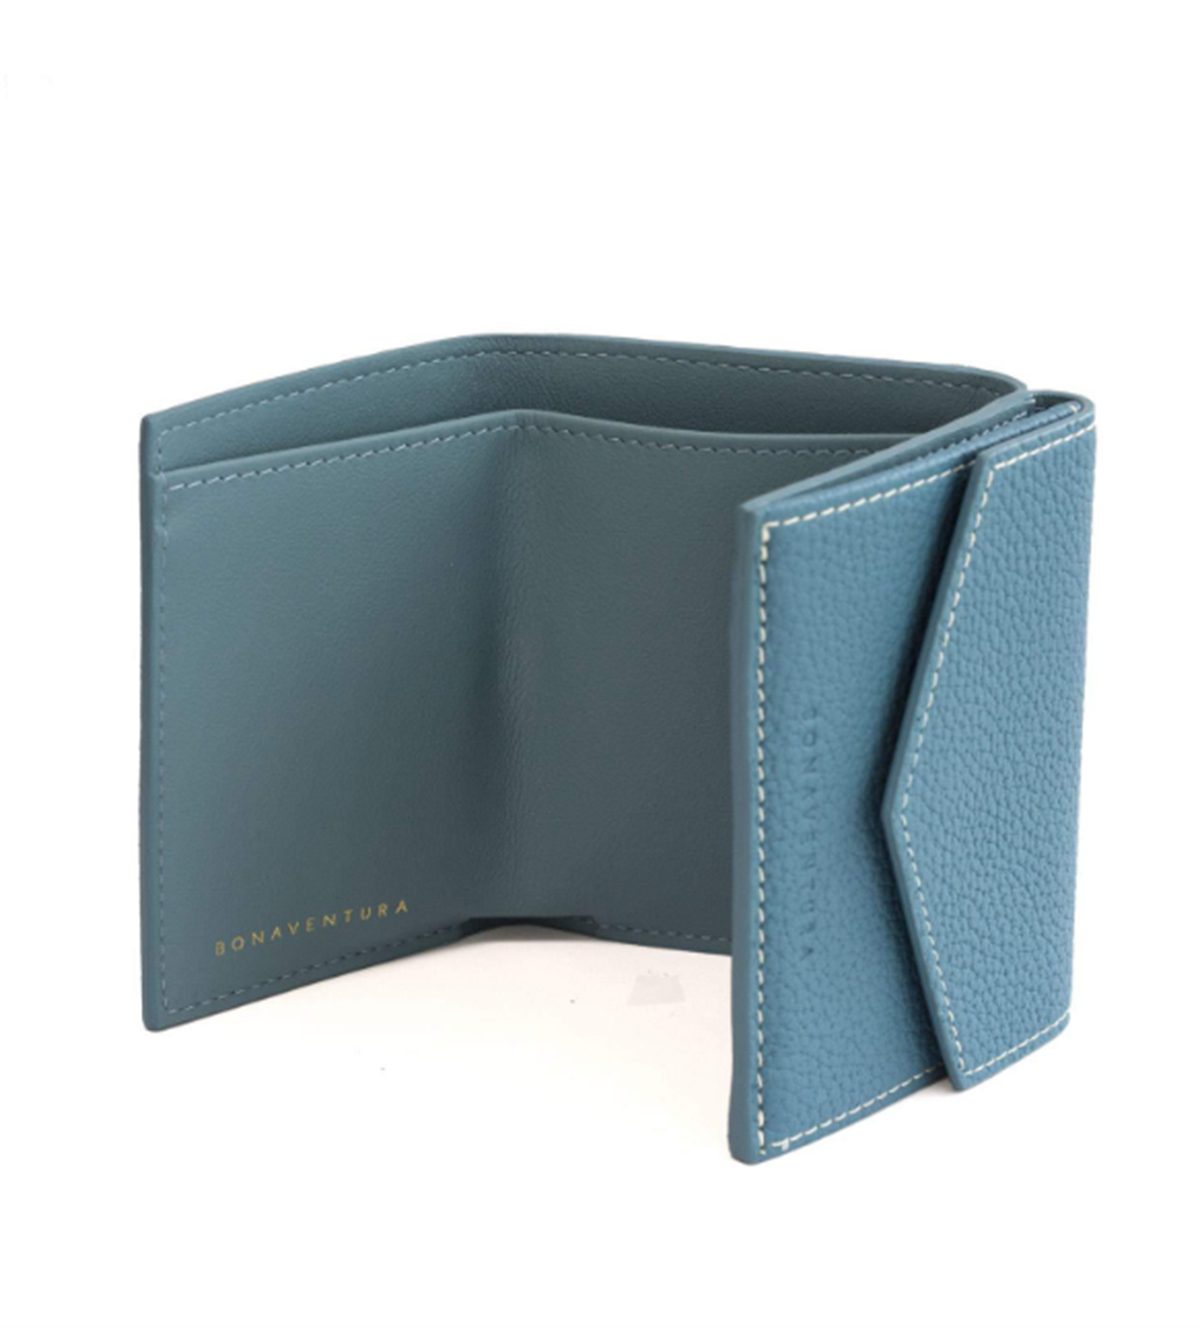 Tragbare Lederbrieftasche Blau mit selected carefully mehreren Kartenfächern vertikale Brieftasche